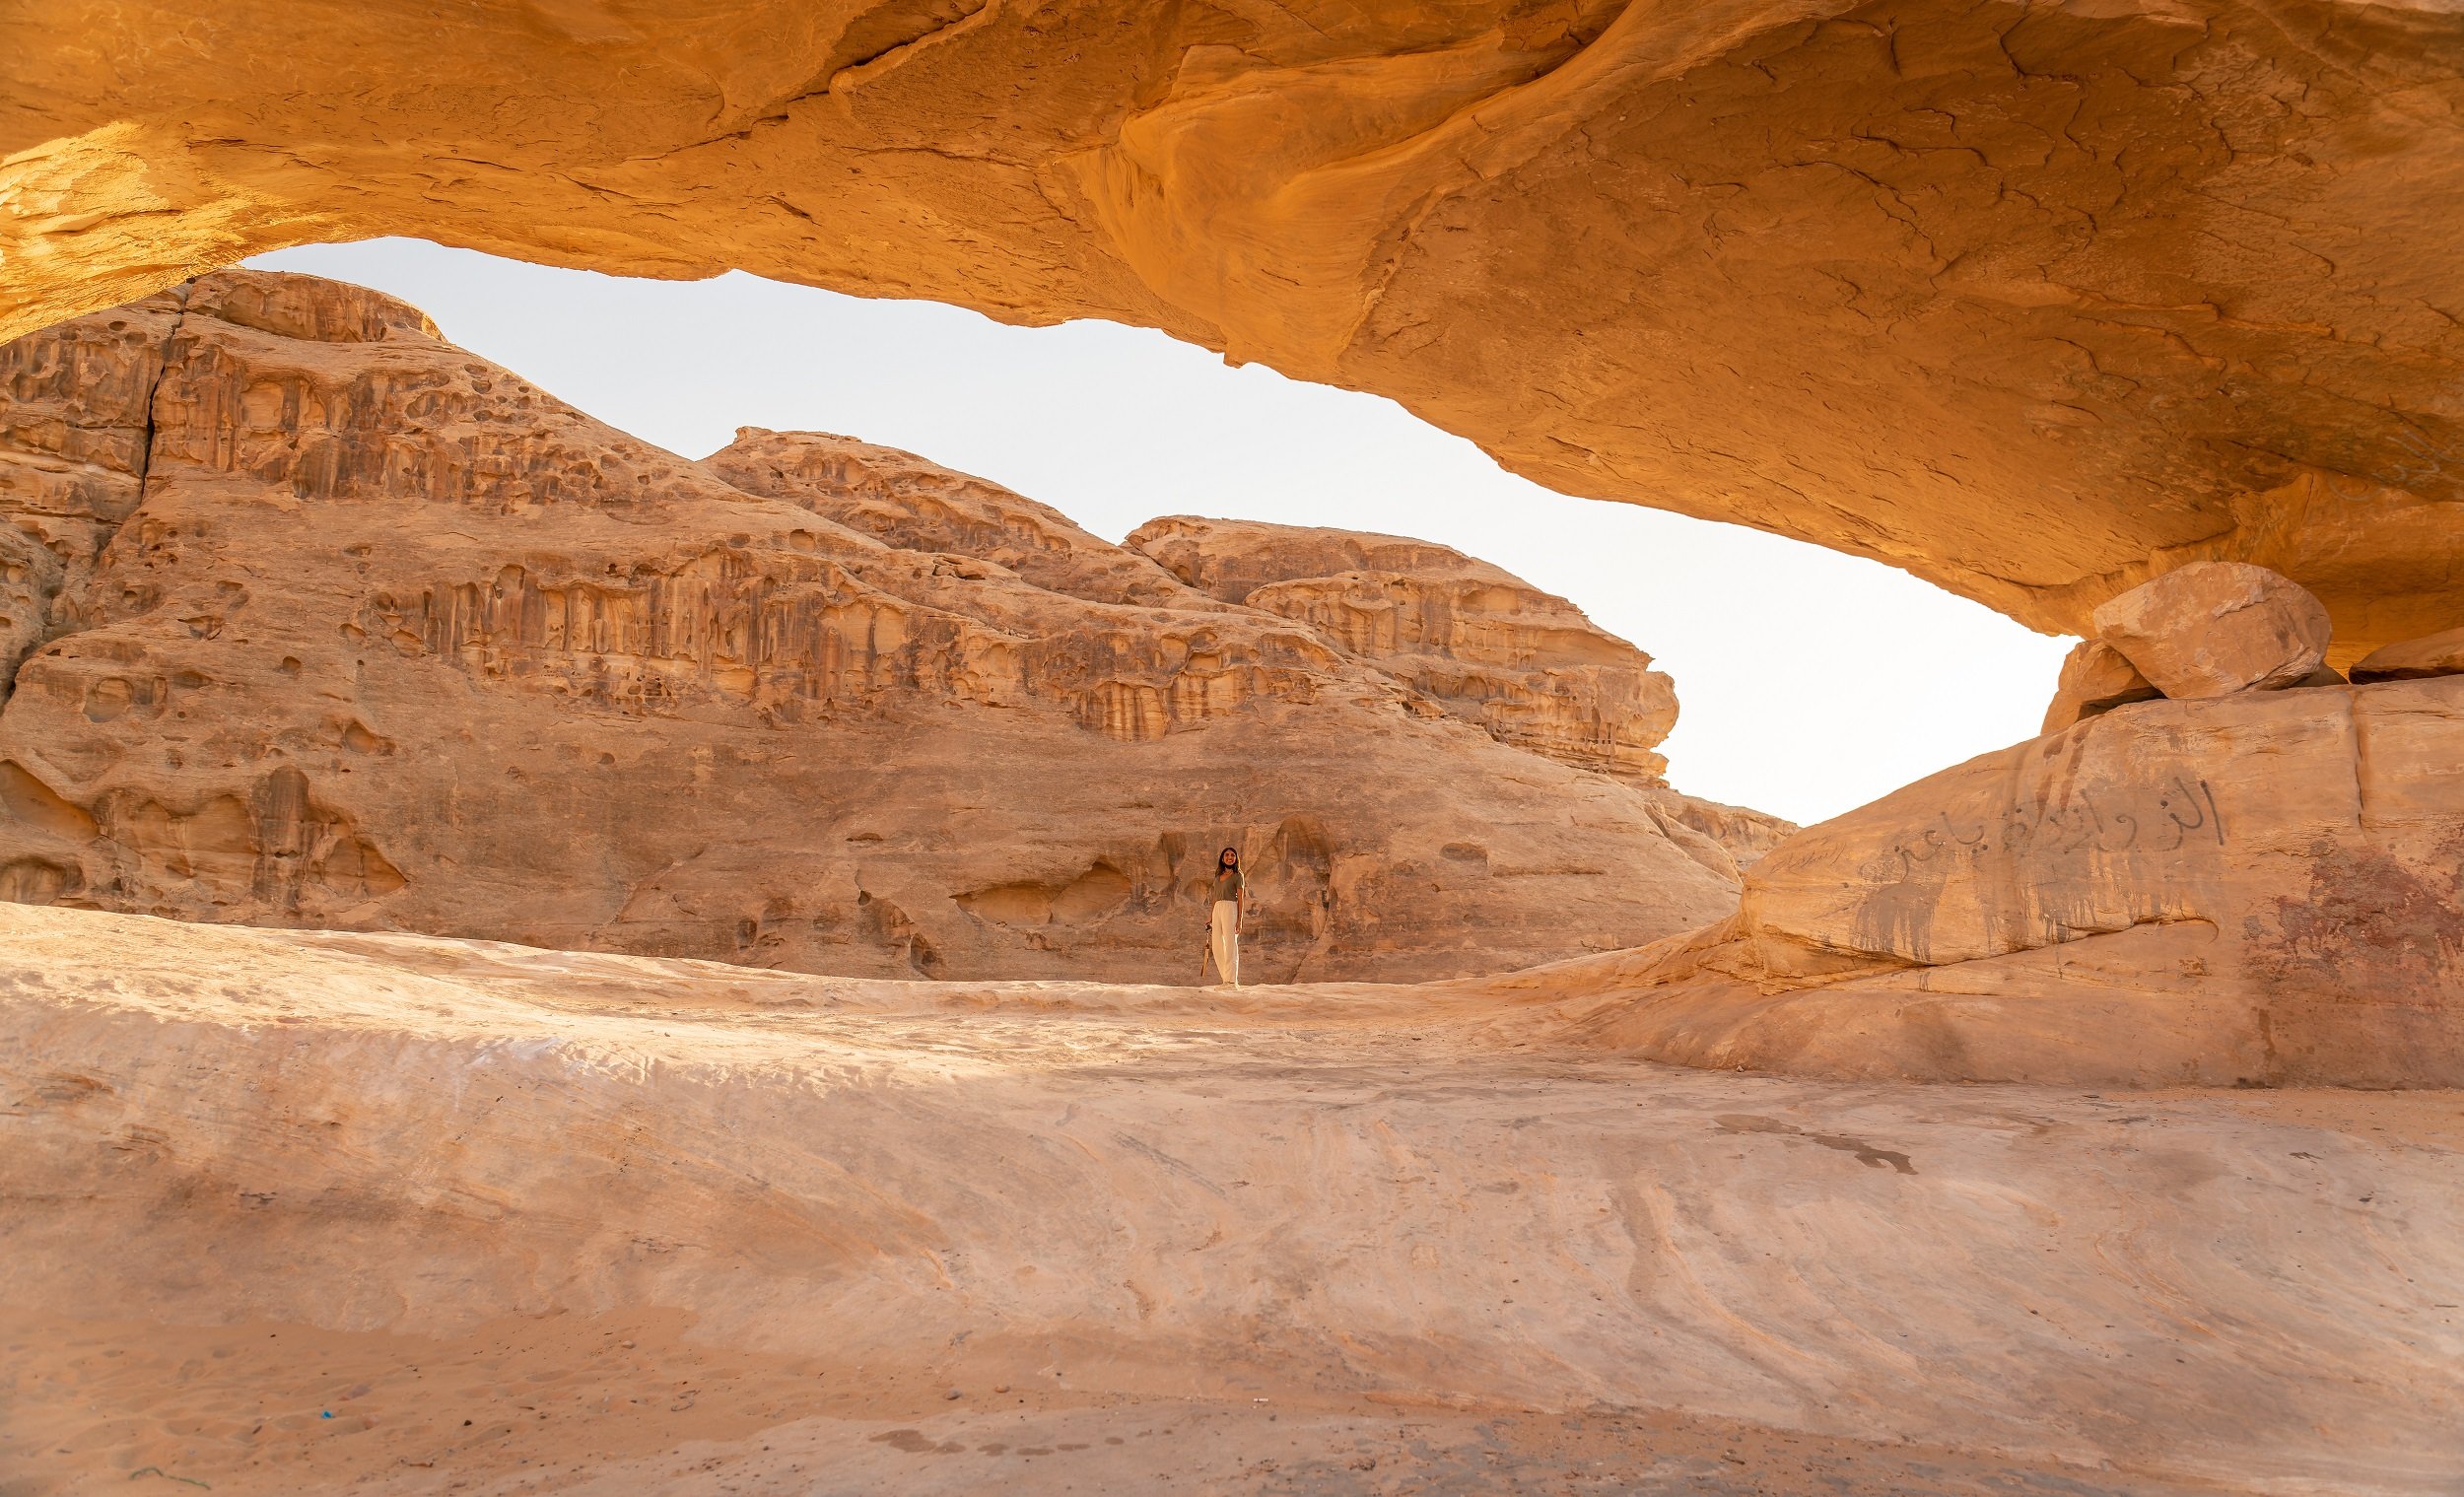  Travel Guide to Jordan - Wadi Rum  